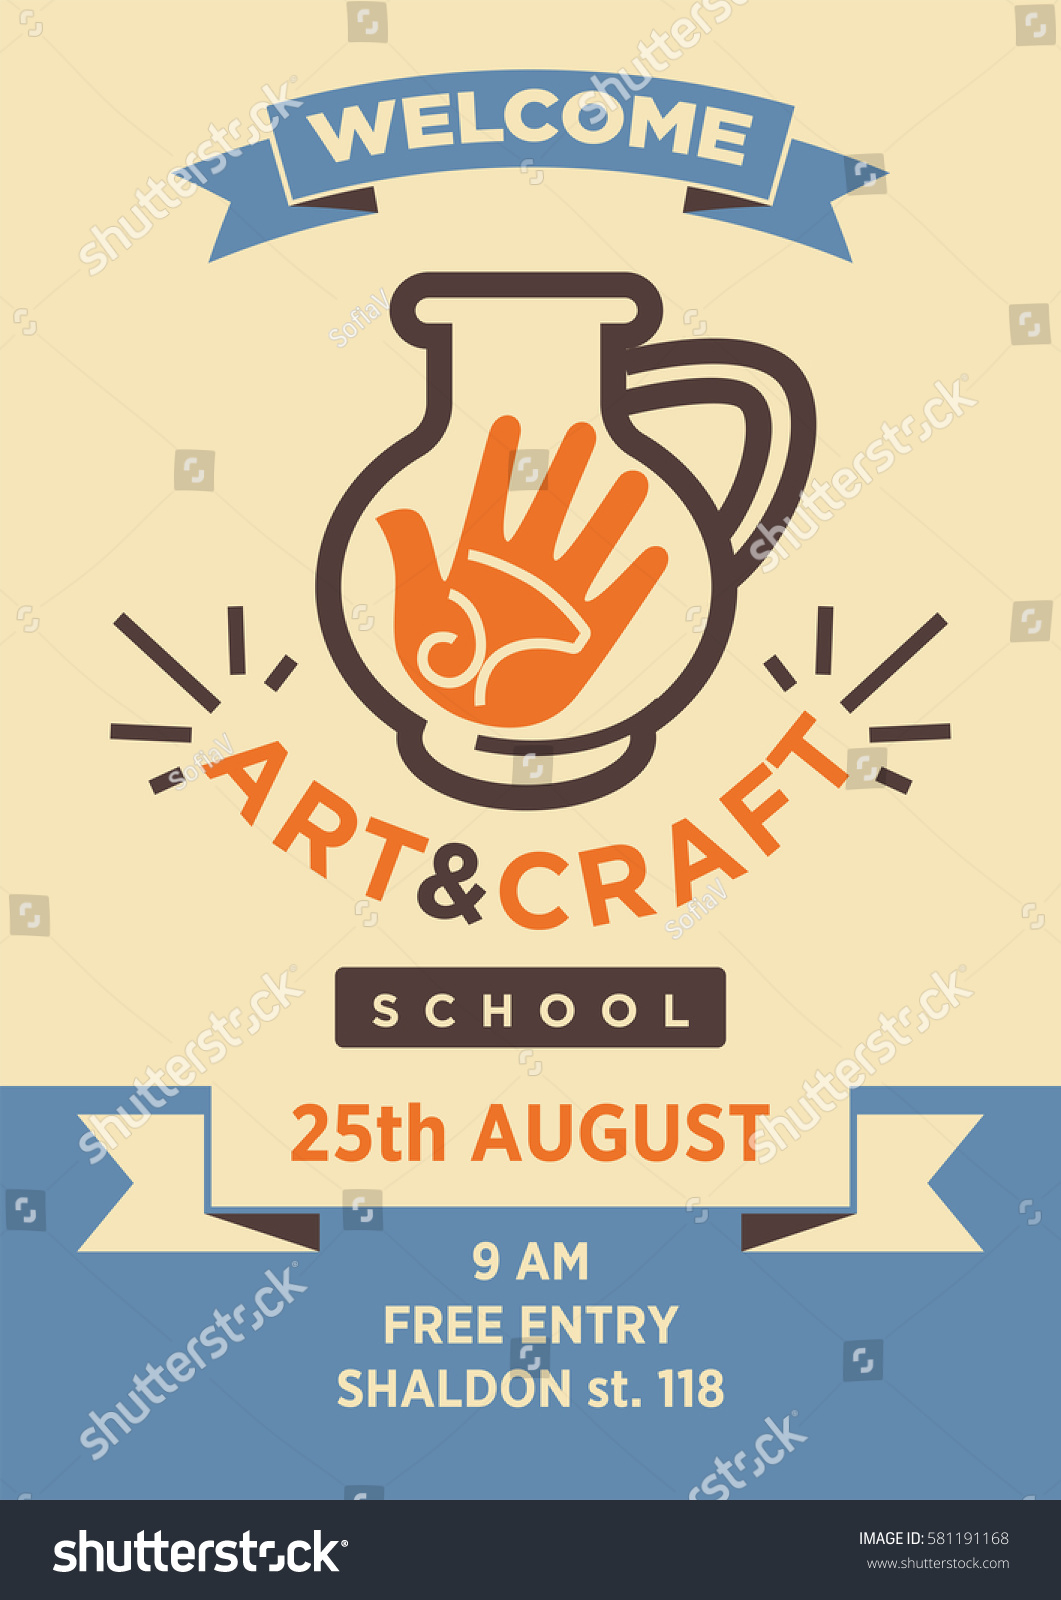 Suchen Sie nach Art Craft School Studio Welcome Poster  Regarding Craft Show Flyer Template Intended For Craft Show Flyer Template